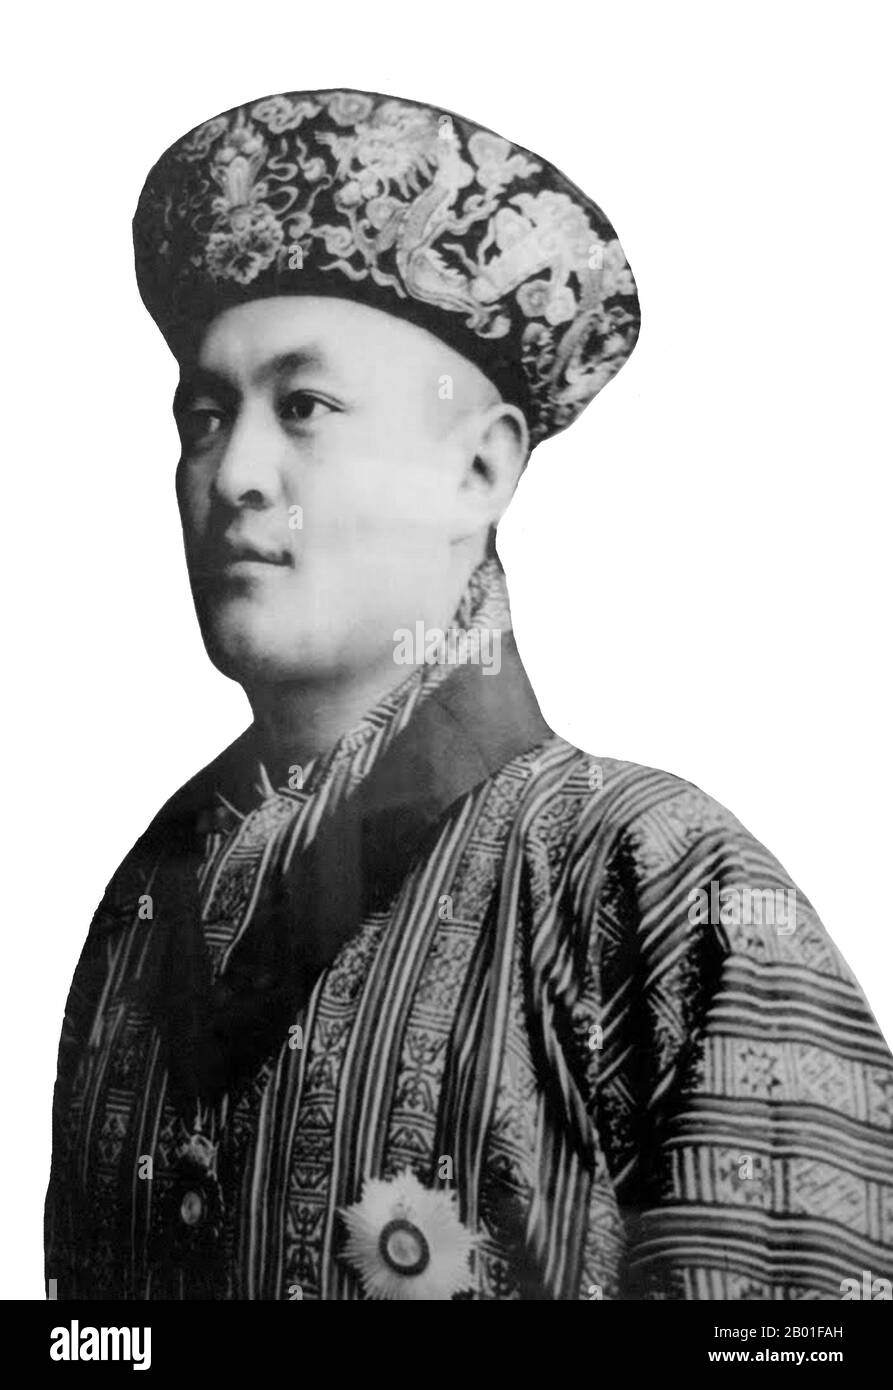 Bhutan: Sua Maestà Jigme Wangchuck (1905 - 30 marzo 1952), 2nd Druk Gyalpo o 'Dragon King' (r. 1926-1952), c. 1926. Jigme Wangchuk fu il 2nd° Gyalpo di Druk del Bhutan, ascendente al trono nel 1926 dopo la morte del padre, Ugyen Wangchuck. Nell'ambito delle riforme giuridiche e infrastrutturali durante il suo regno, continuò la politica del Bhutan di isolamento quasi completo dal mondo esterno, con gli unici legami esteri che erano con il Raj britannico in India. Il Druk Gyalpo ('Re del Drago') è il capo di stato del Bhutan. È anche conosciuto in inglese come il re del Bhutan. Foto Stock